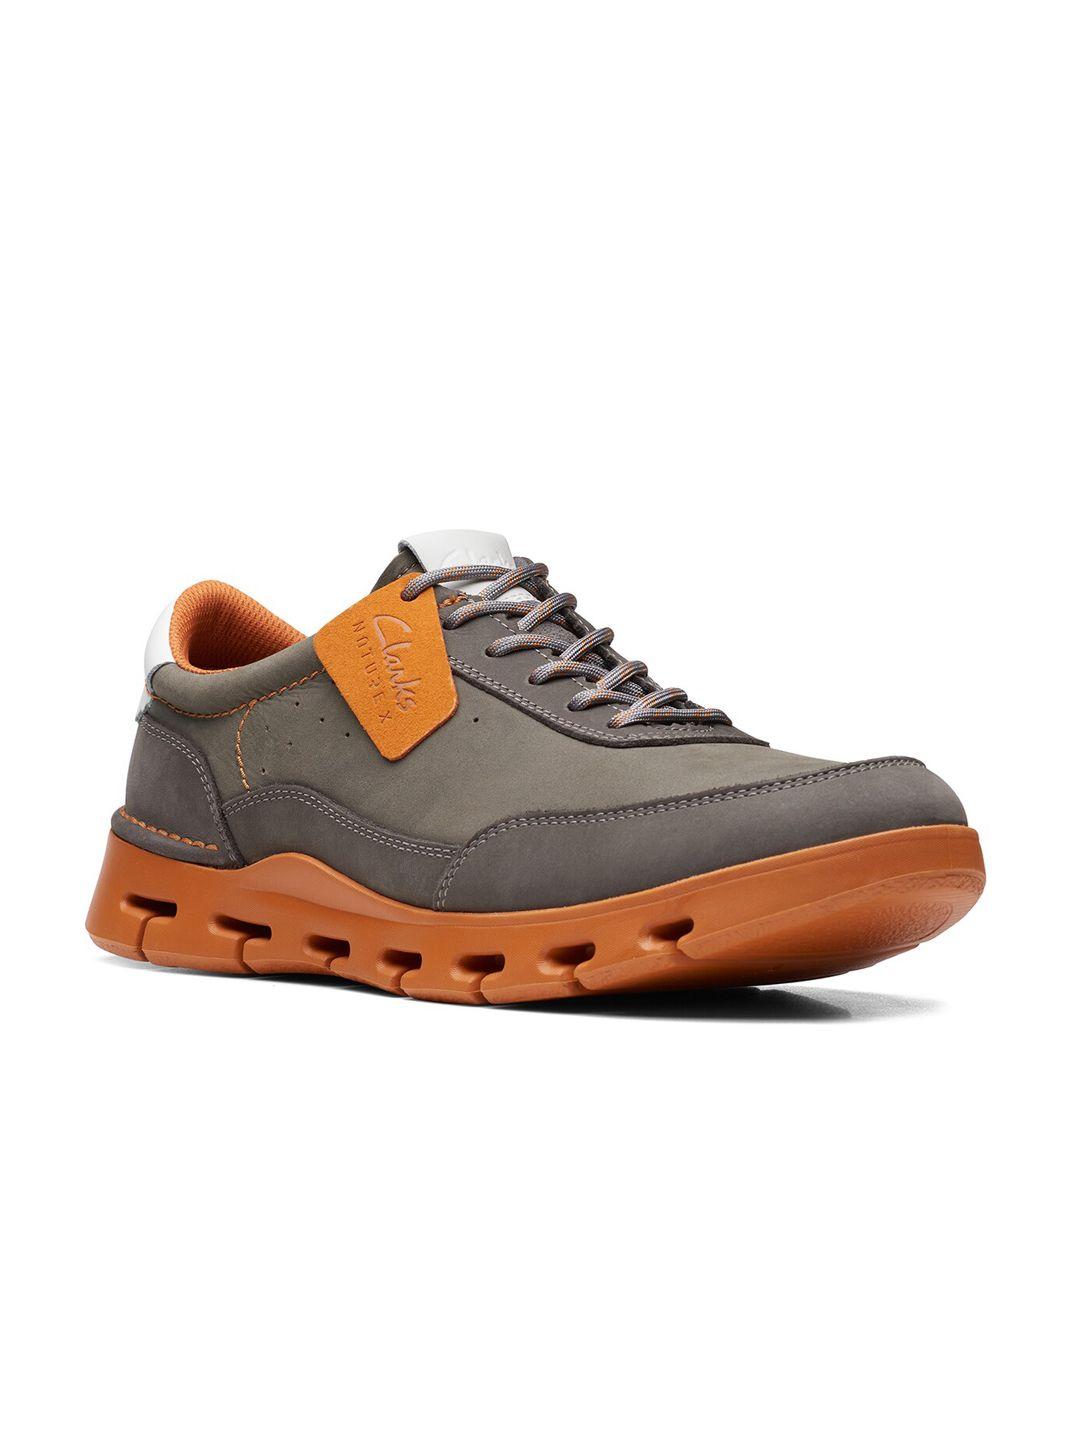 clarks-men-nature-x-one-nubuck-comfort-insole-sneakers